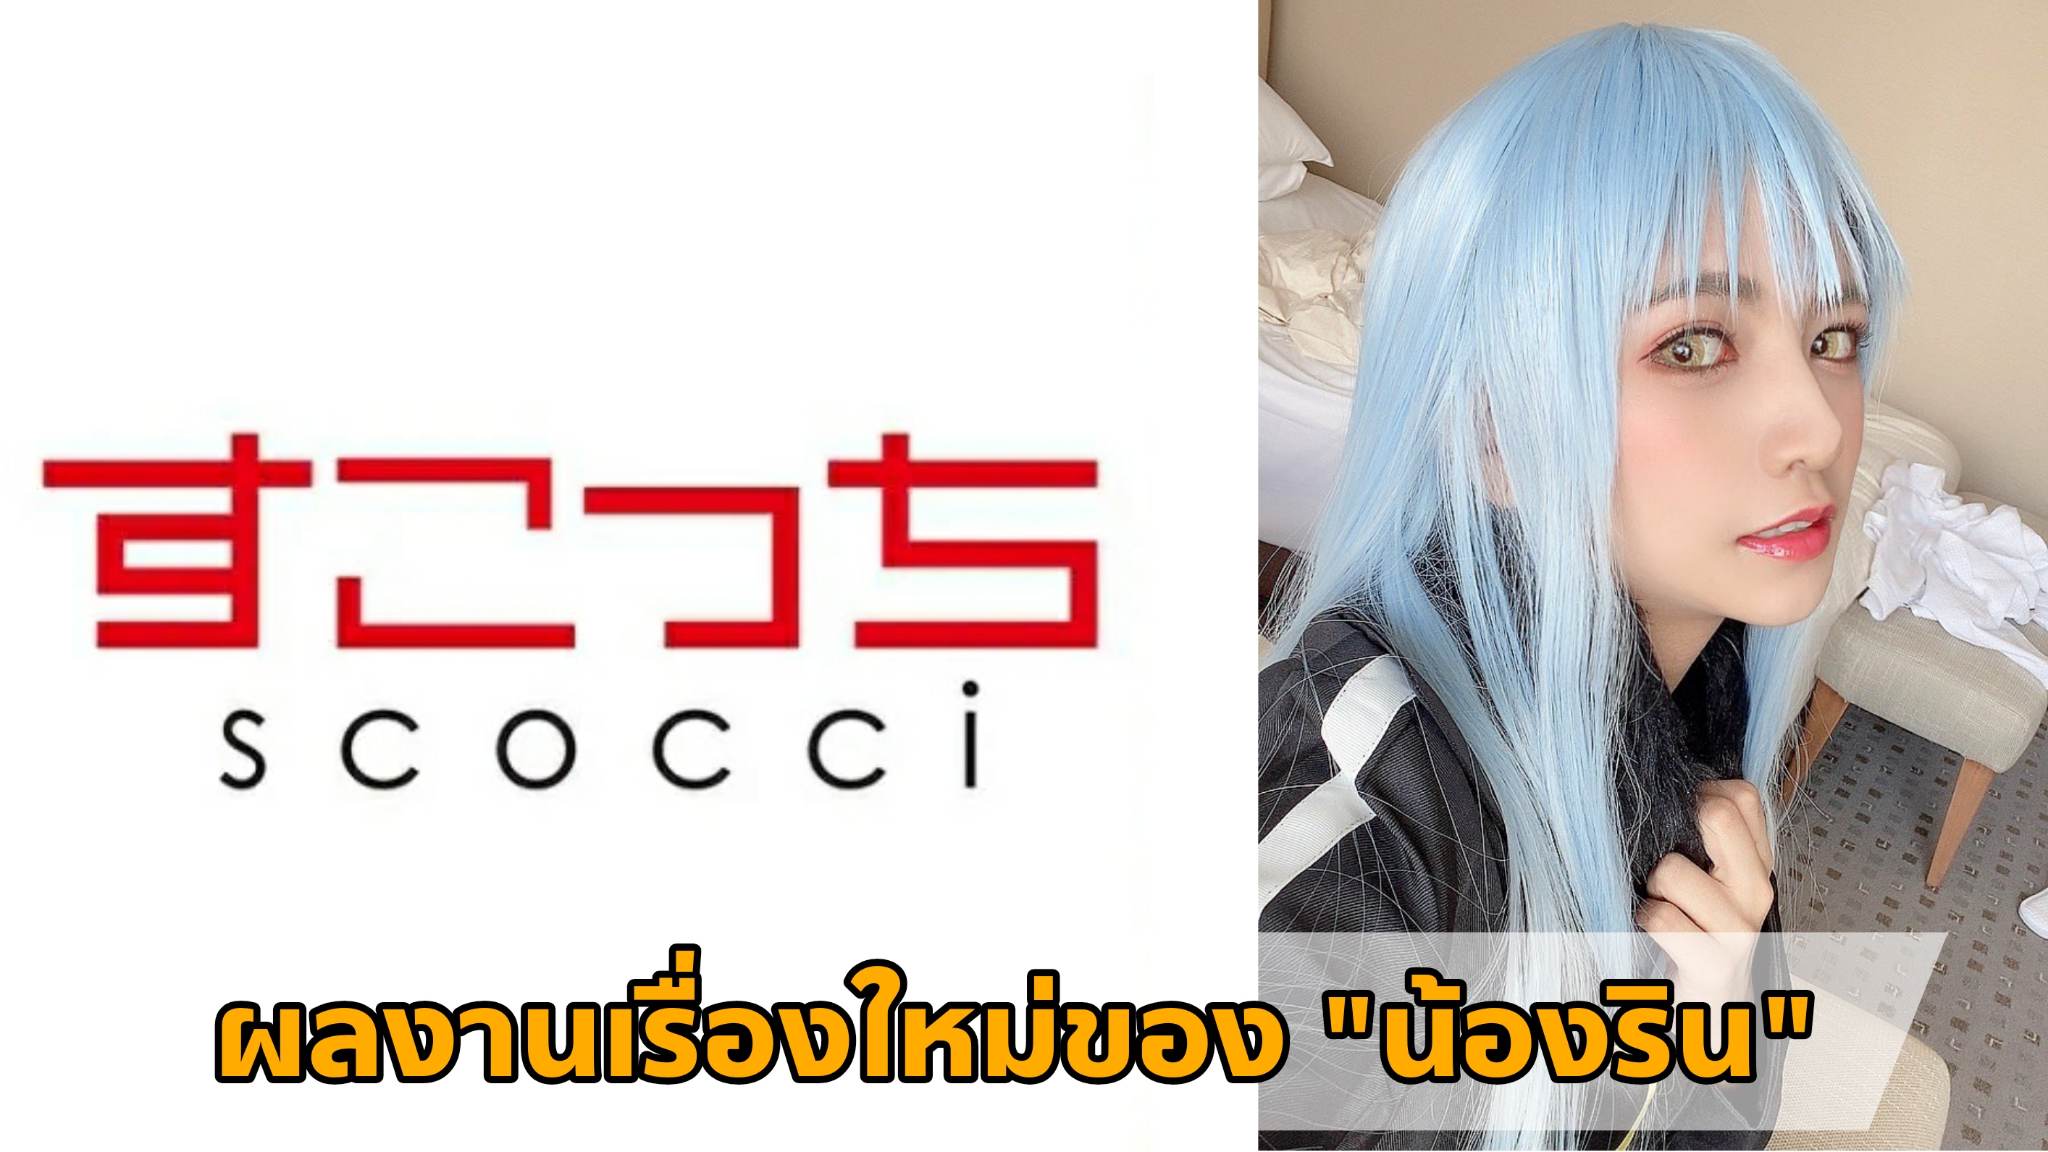 [SCOH-105] ผลงานเรื่องใหม่ของ "น้องริน" (Rin Miyazaki) Cosplay เป็น "ท่านริมุรุ" 4